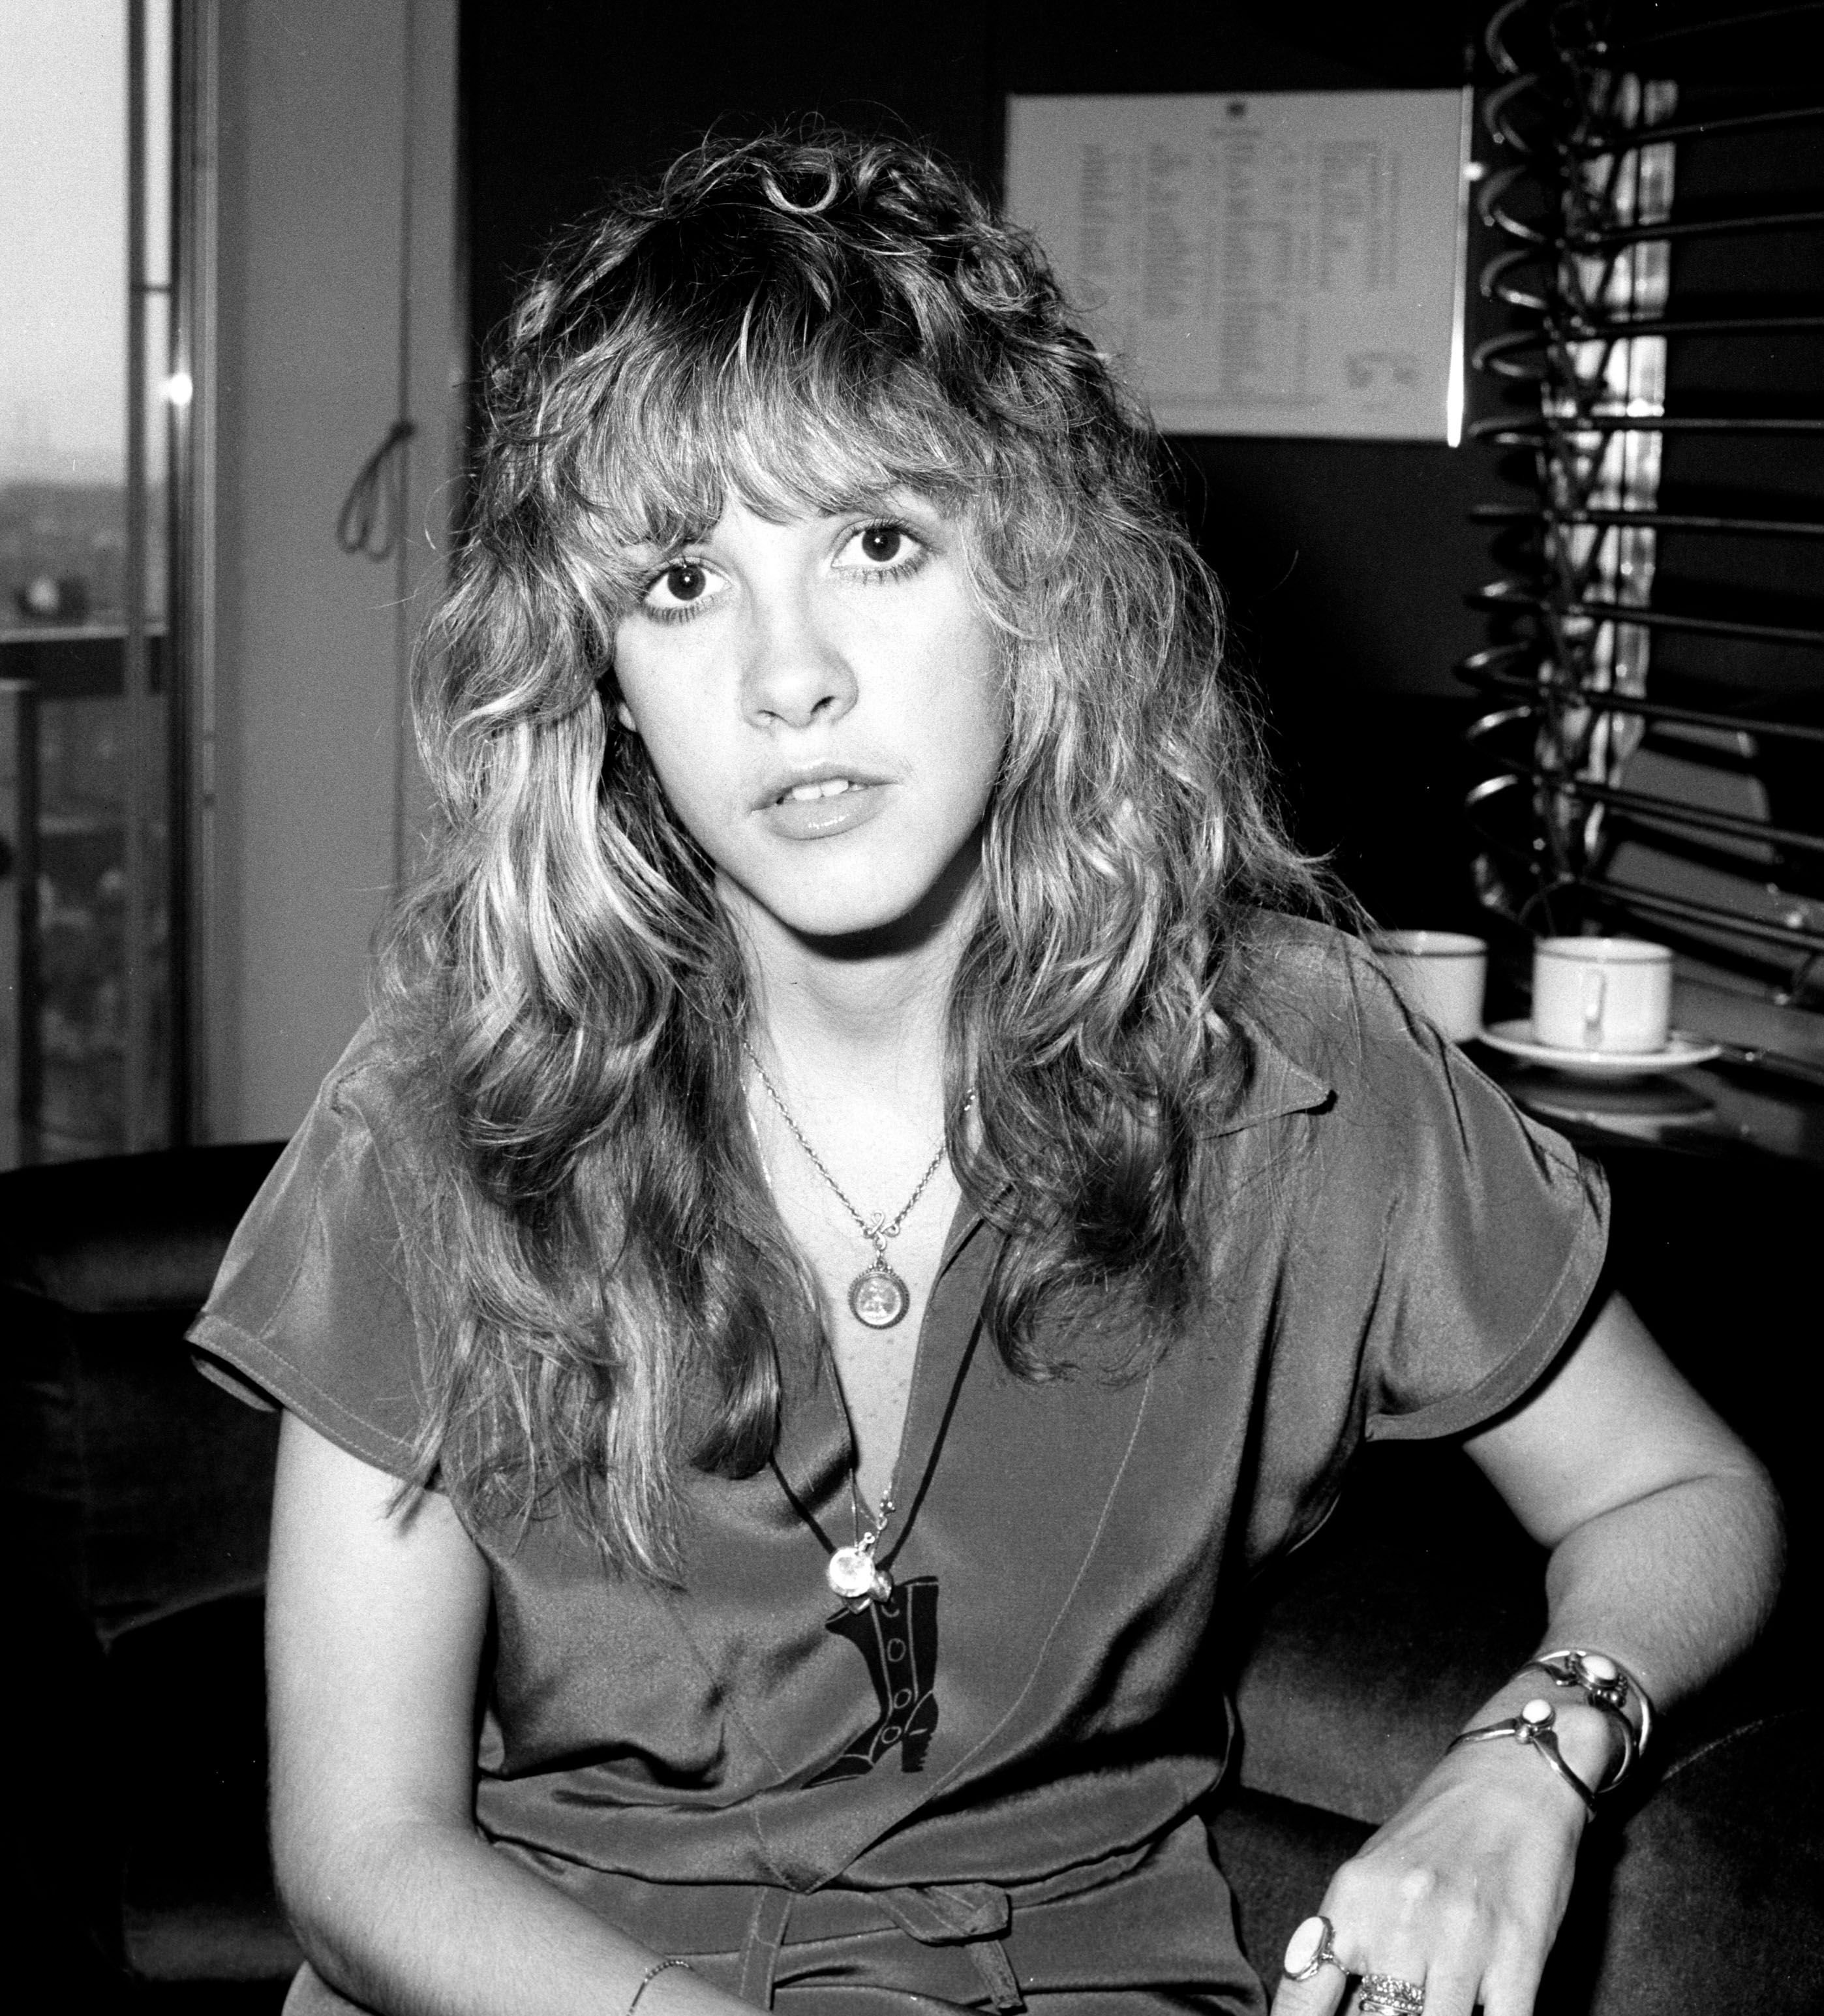 Fleetwood Mac singer Stevie Nicks in 1977 | Source: Getty Images